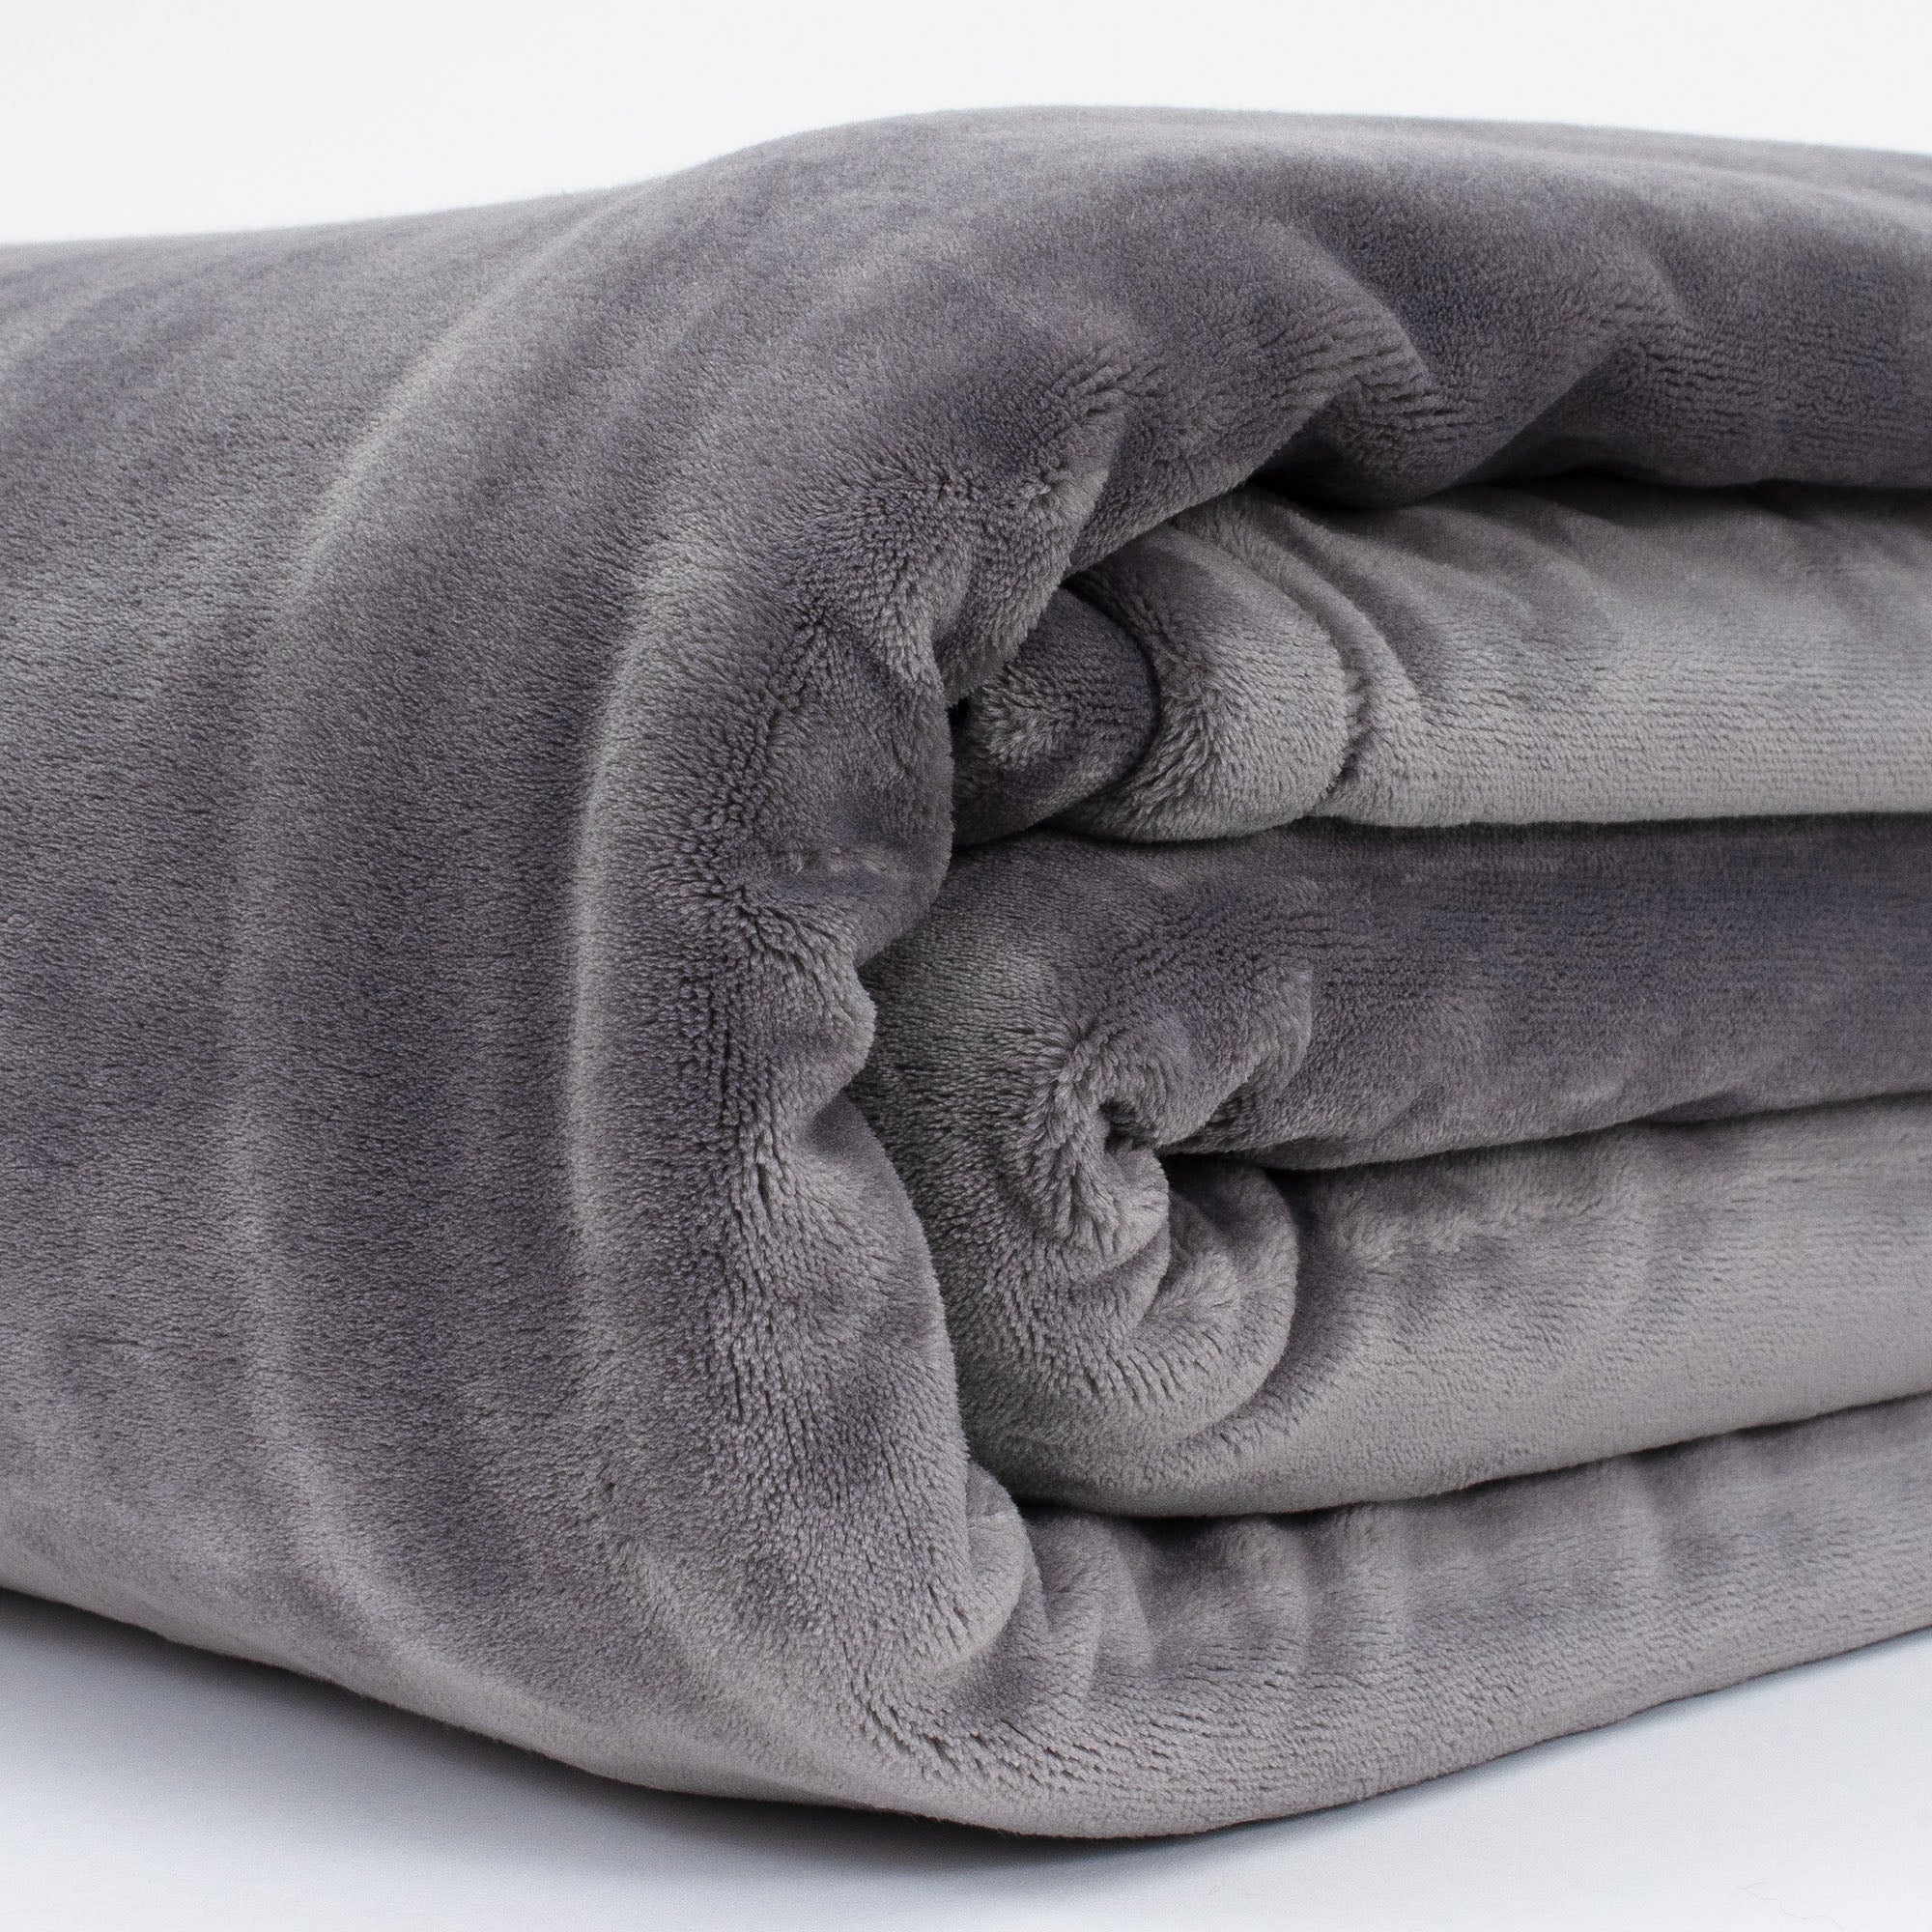 University Of Louisville Fleece Blankets for Sale - Fine Art America